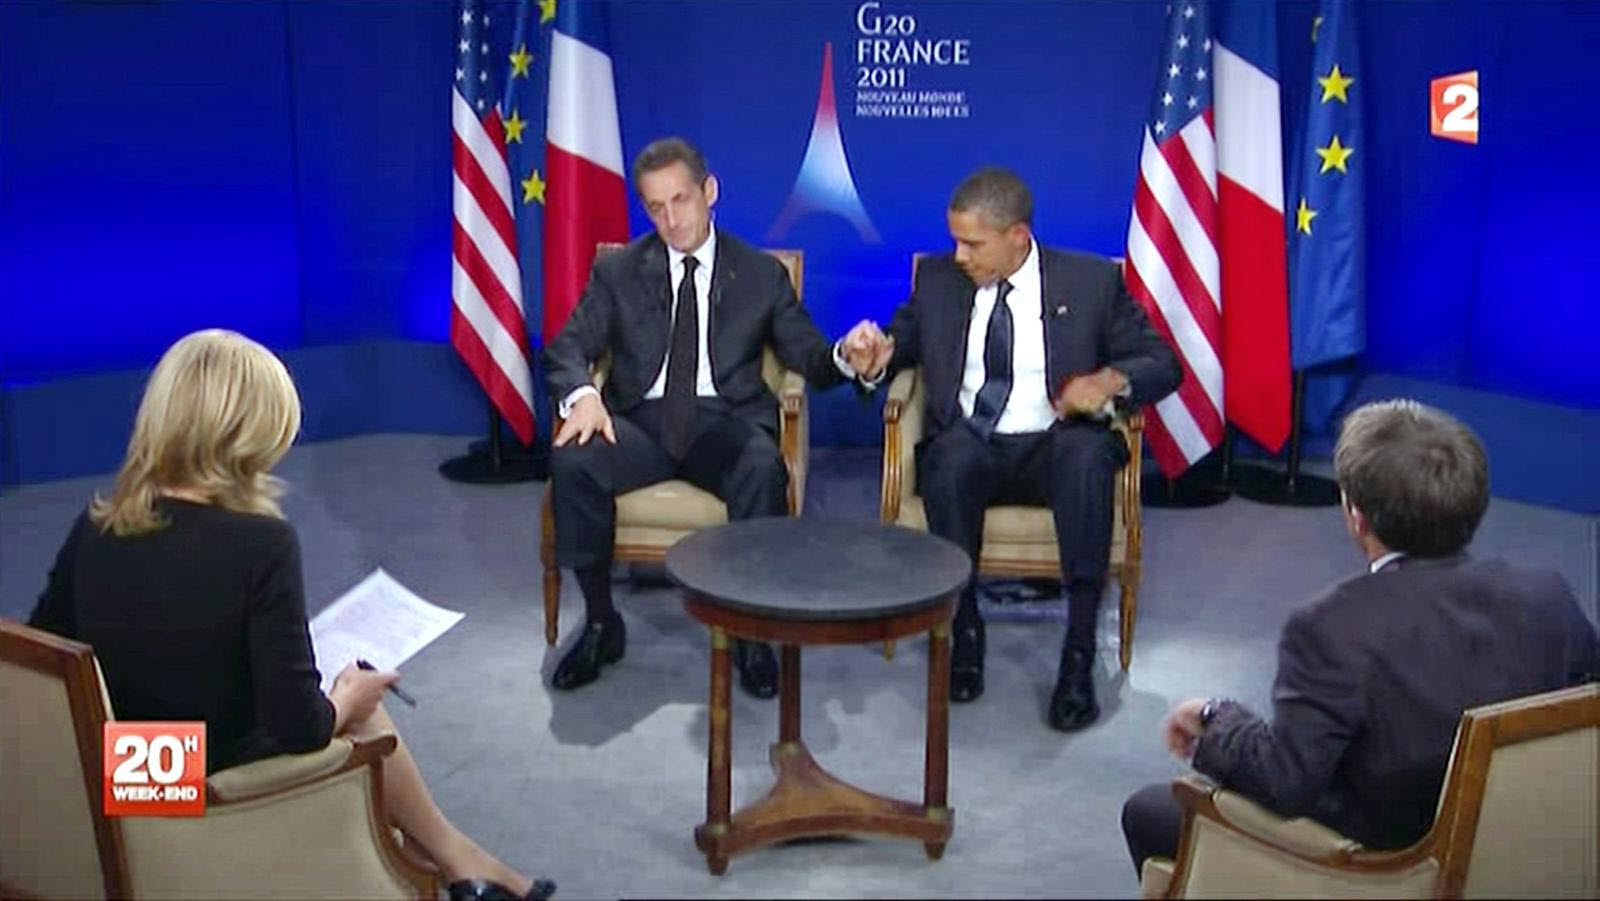 Nicolas Sarkozy humilié par Barack Obama : ce surnom que l'ancien président américain lui a donné